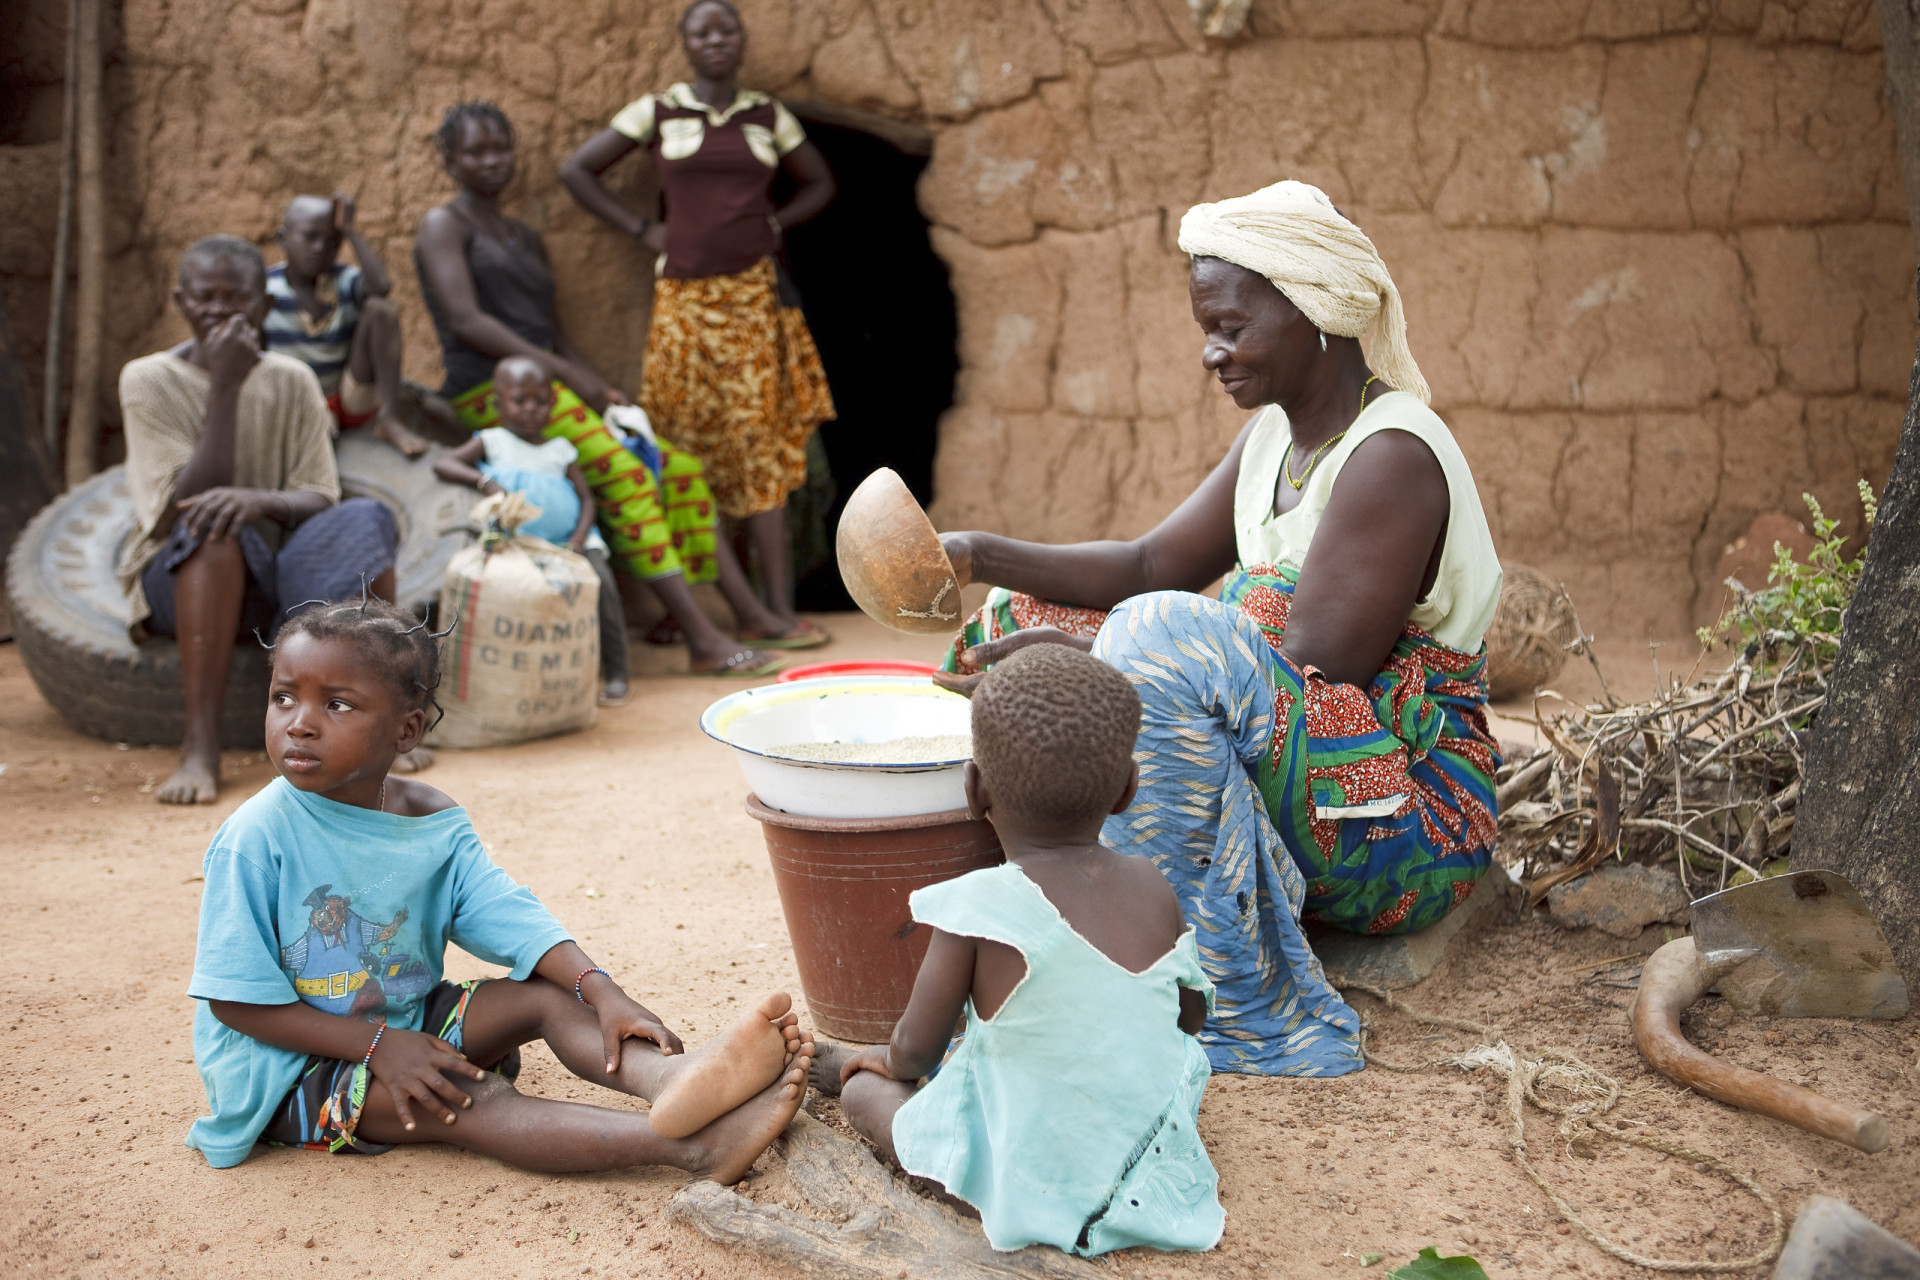 <p>Taux de fécondité moyen par femme : 4,14<br><br>Le Burkina Faso est un autre pays où il faut faire davantage pour réduire le taux de fécondité.</p><p>Tu pourrais aussi aimer:<a href="https://www.starsinsider.com/n/279808?utm_source=msn.com&utm_medium=display&utm_campaign=referral_description&utm_content=694226"> Voici ce que la famille royale regarde à la télé </a></p>